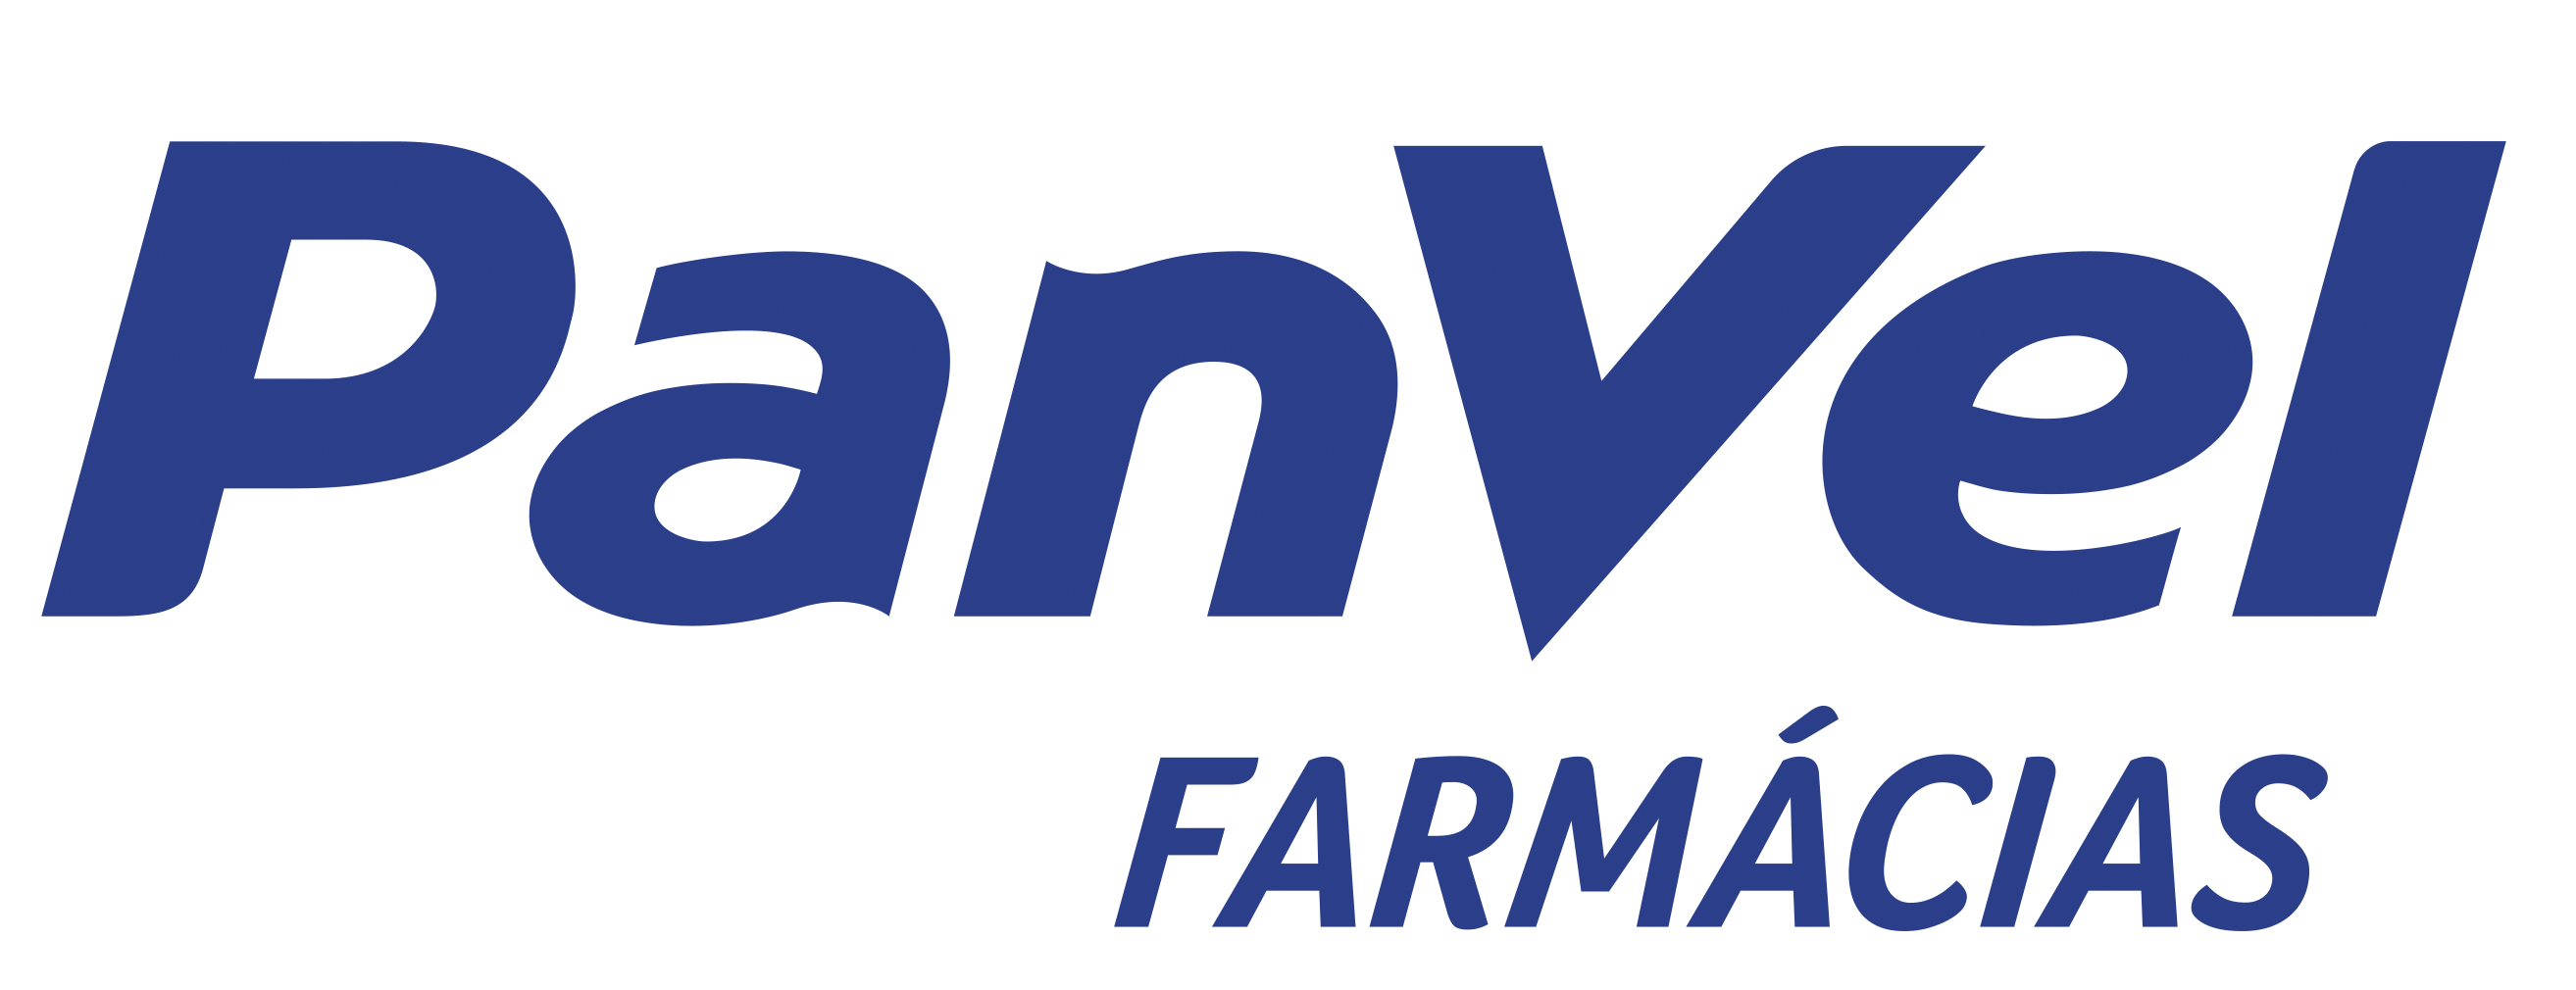 Logo PanVel Farmacias Positivo - Calcitran Triflex